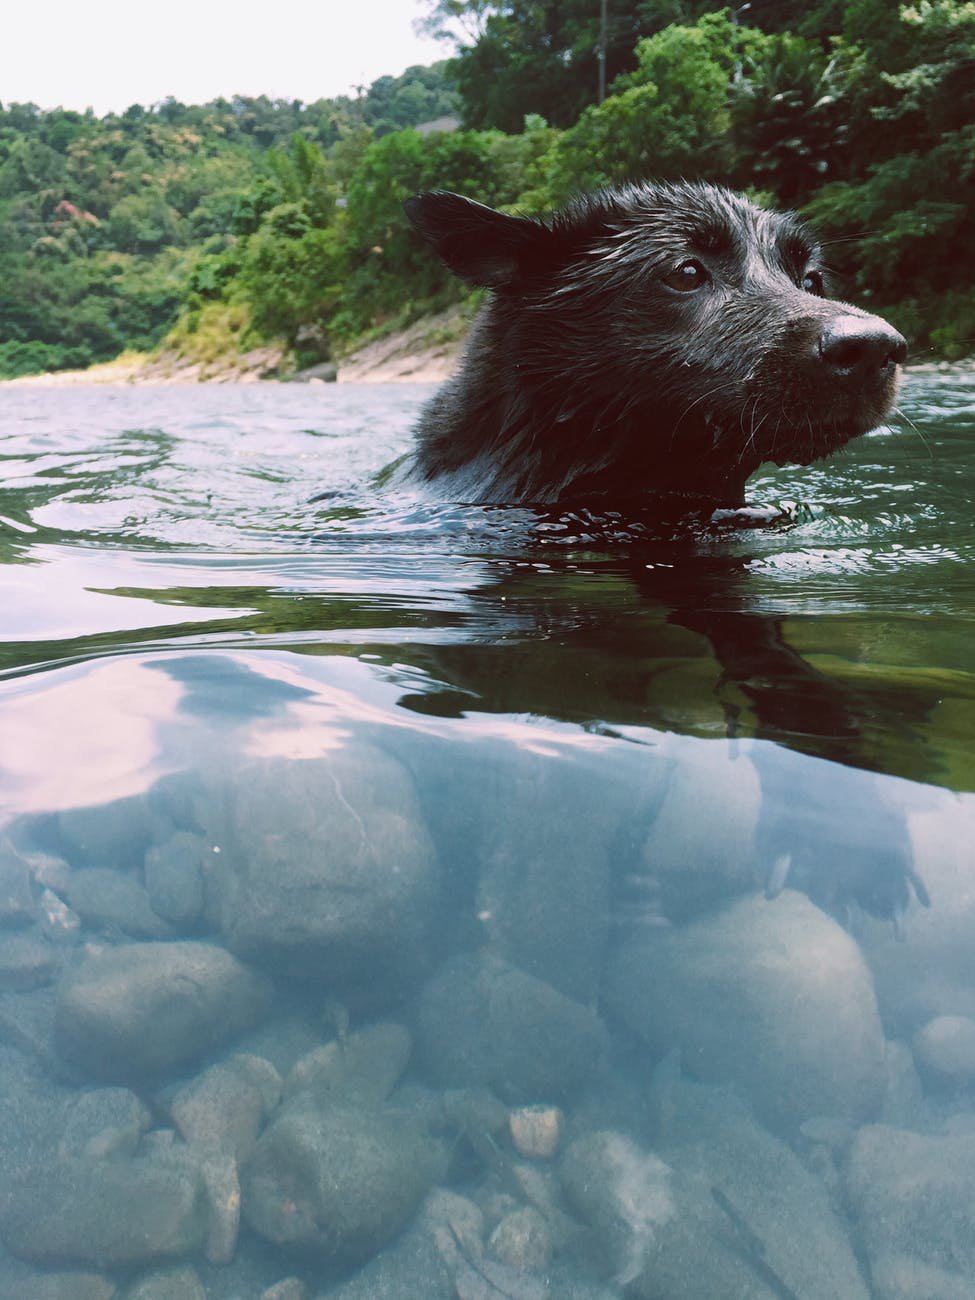 En verano los perritos también se refrescan. Foto de WW en Pixels 